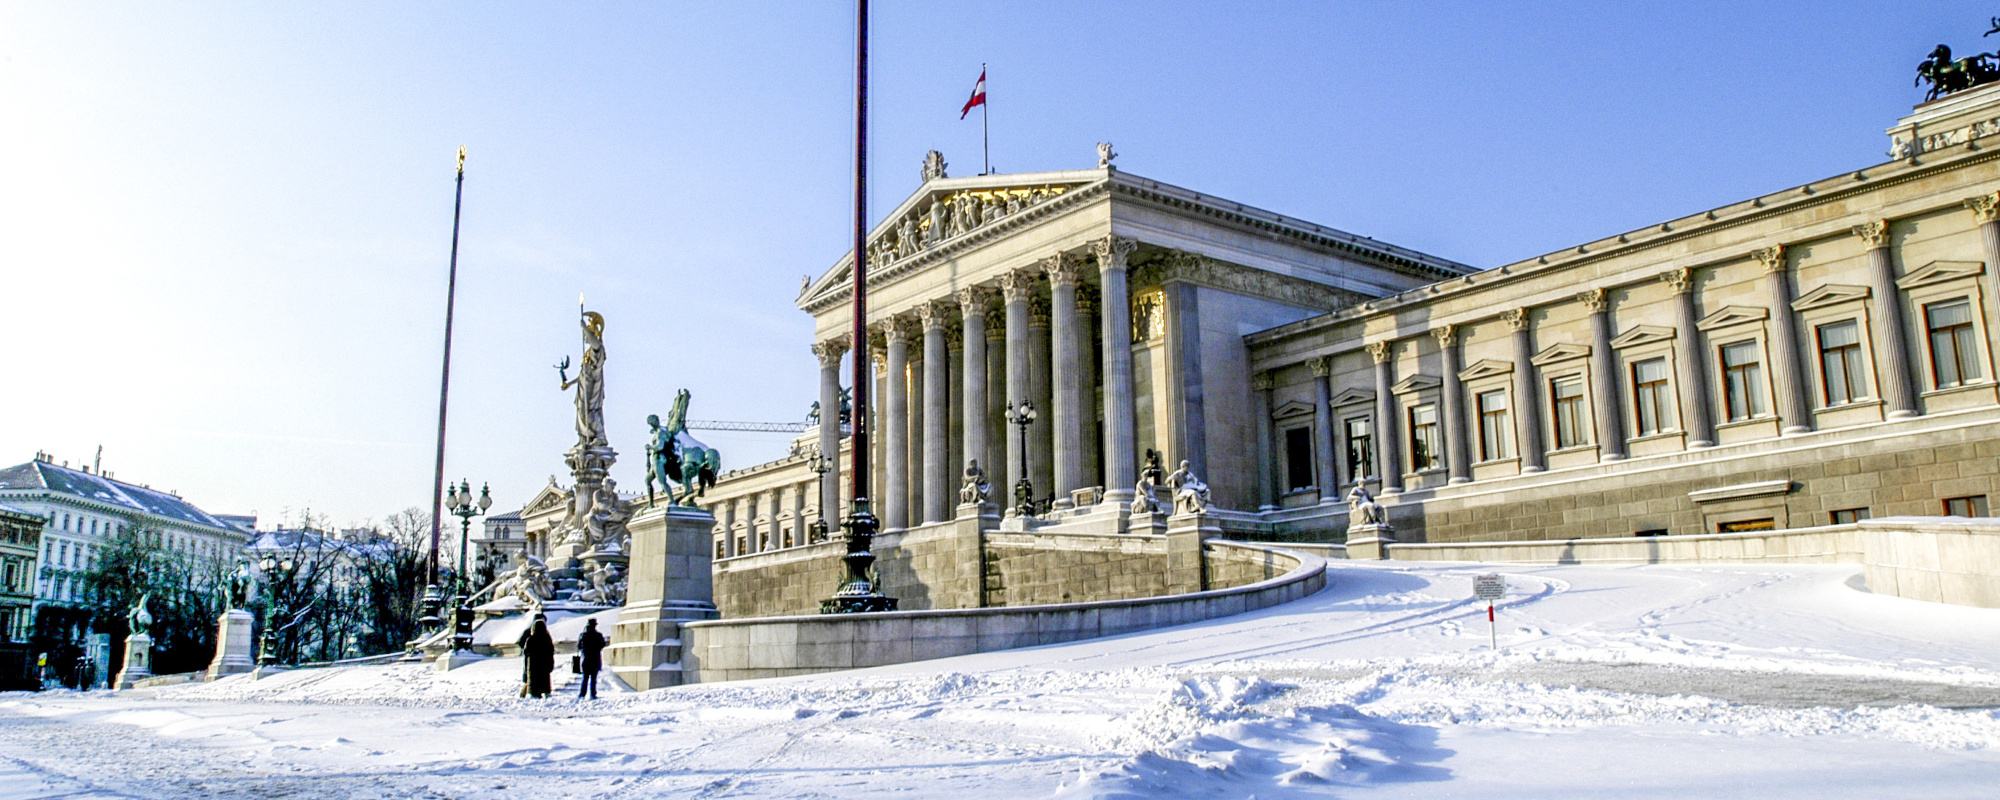 Parlament in Wien bei Schnee